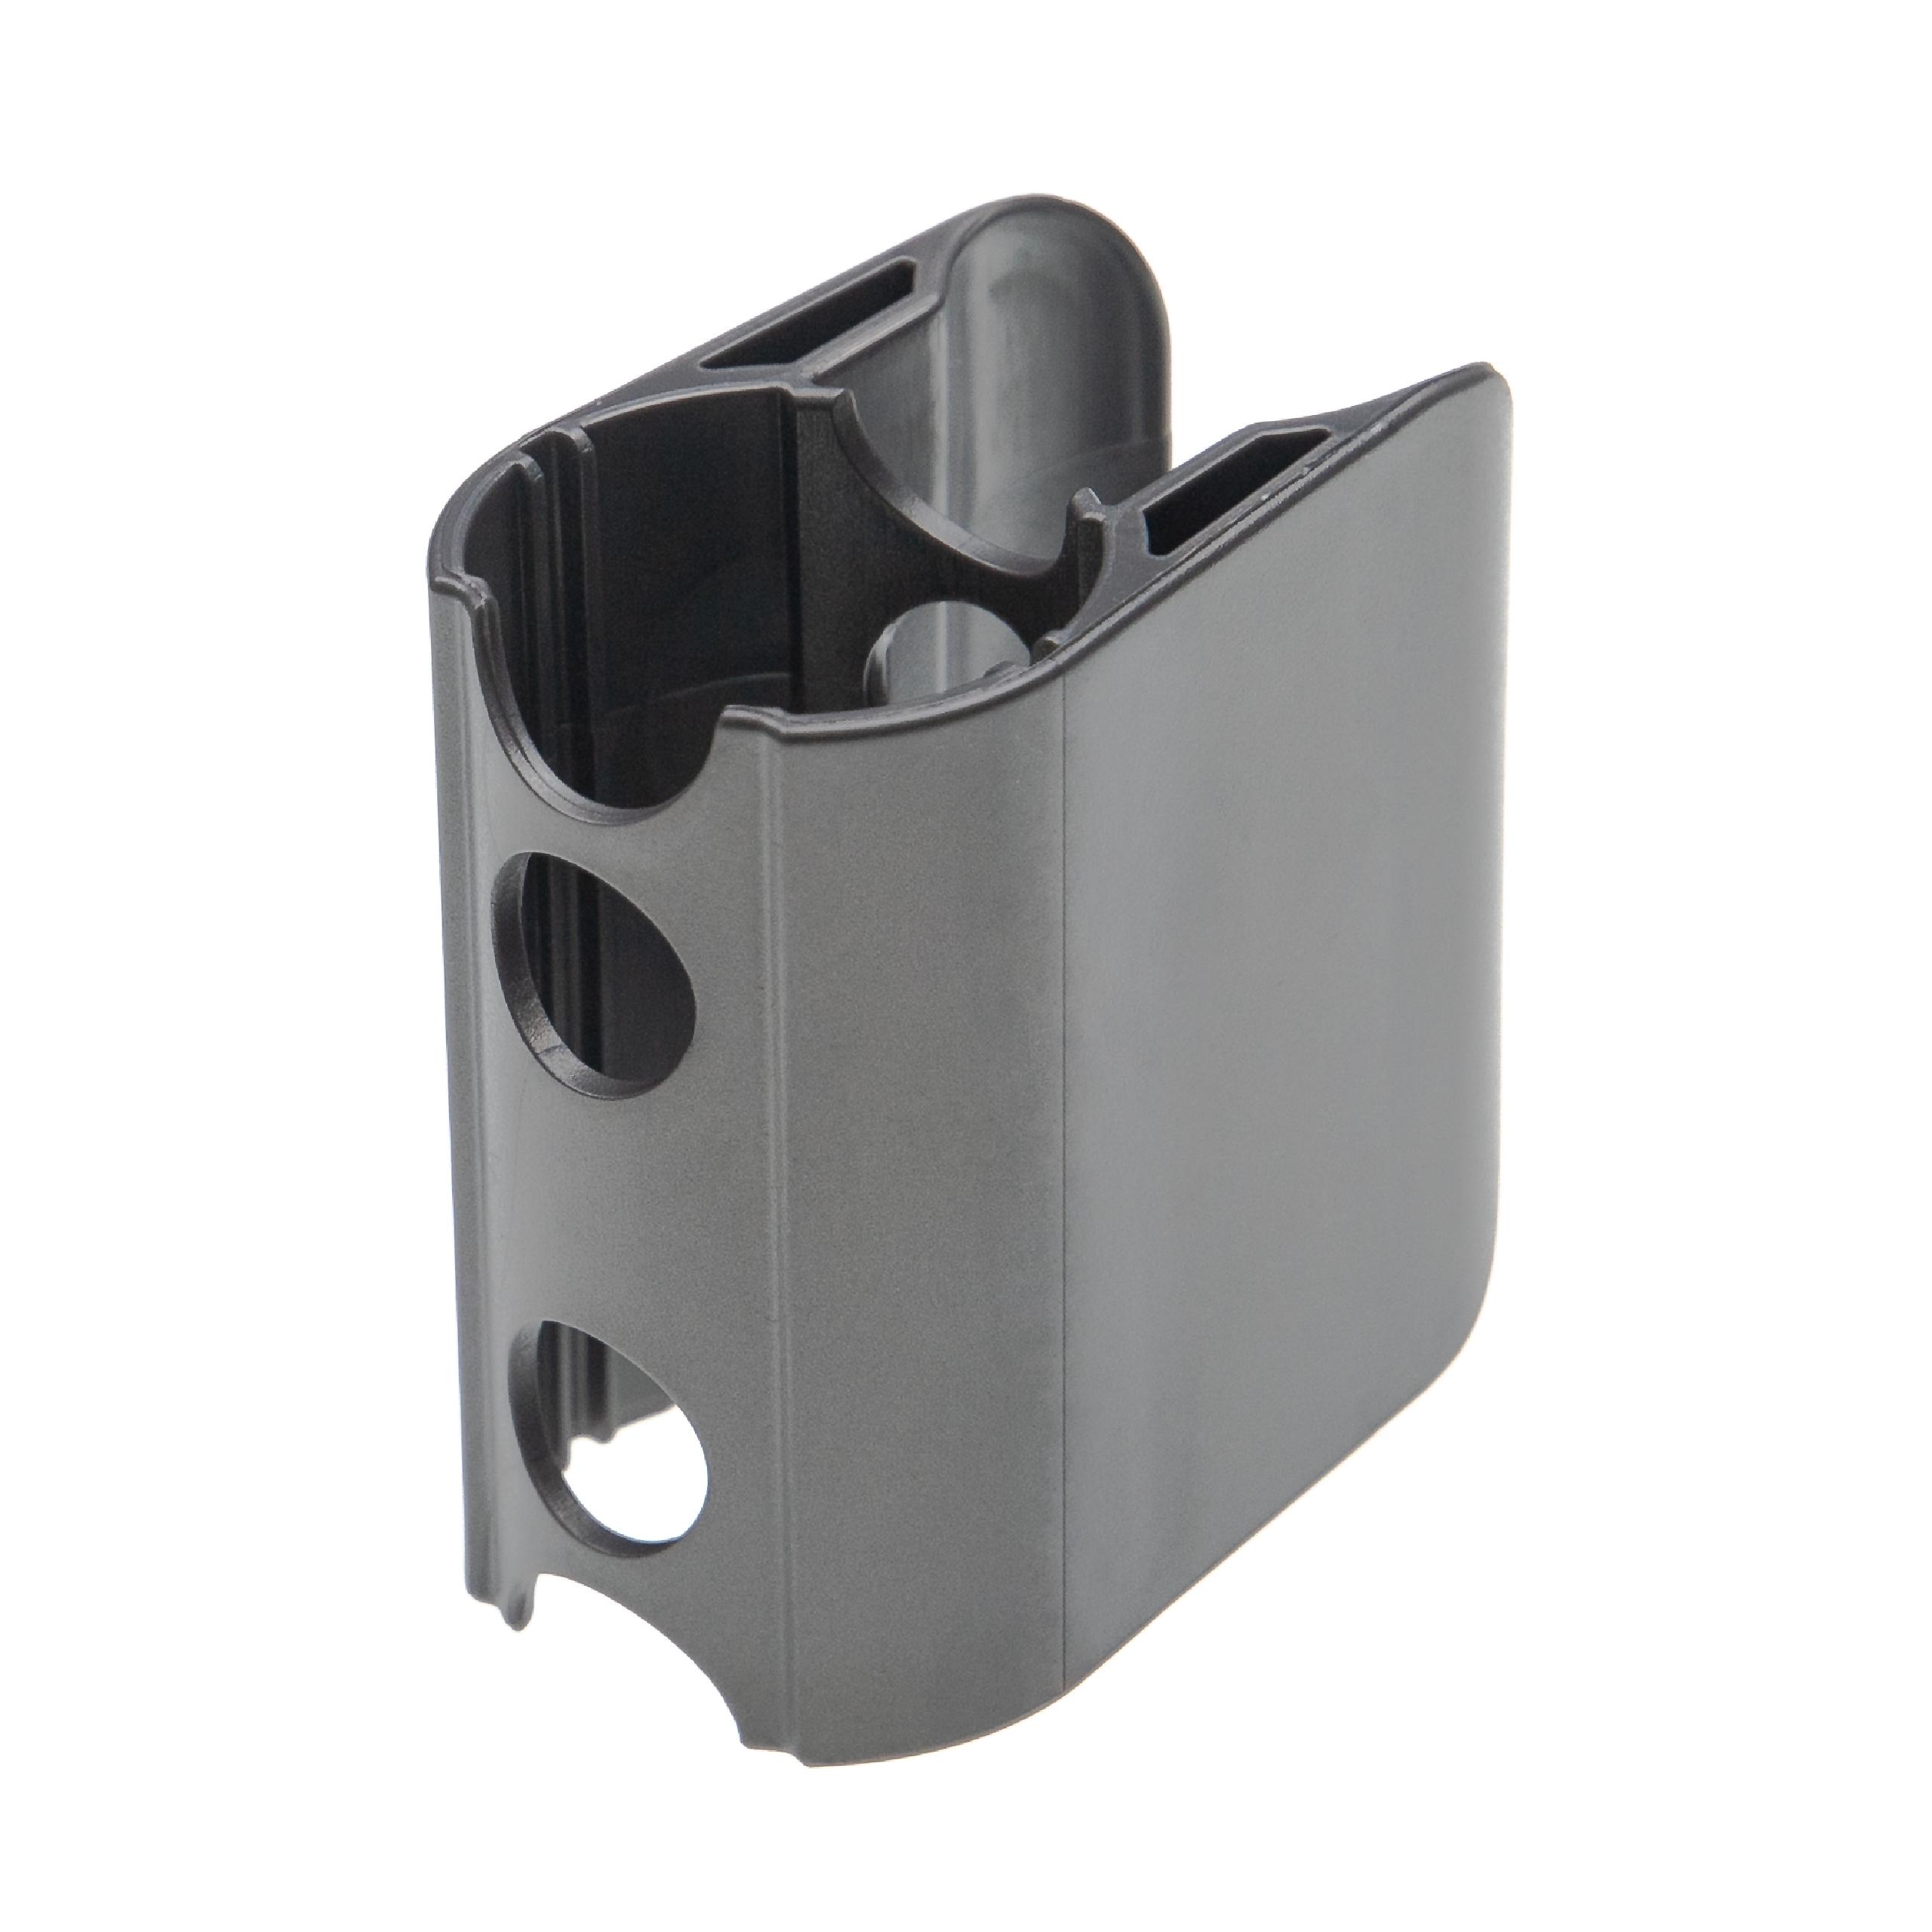 vhbw Clip de montaje compatible con Dyson SV10 accesorios para aspiradoras - Soporte accesorios gris